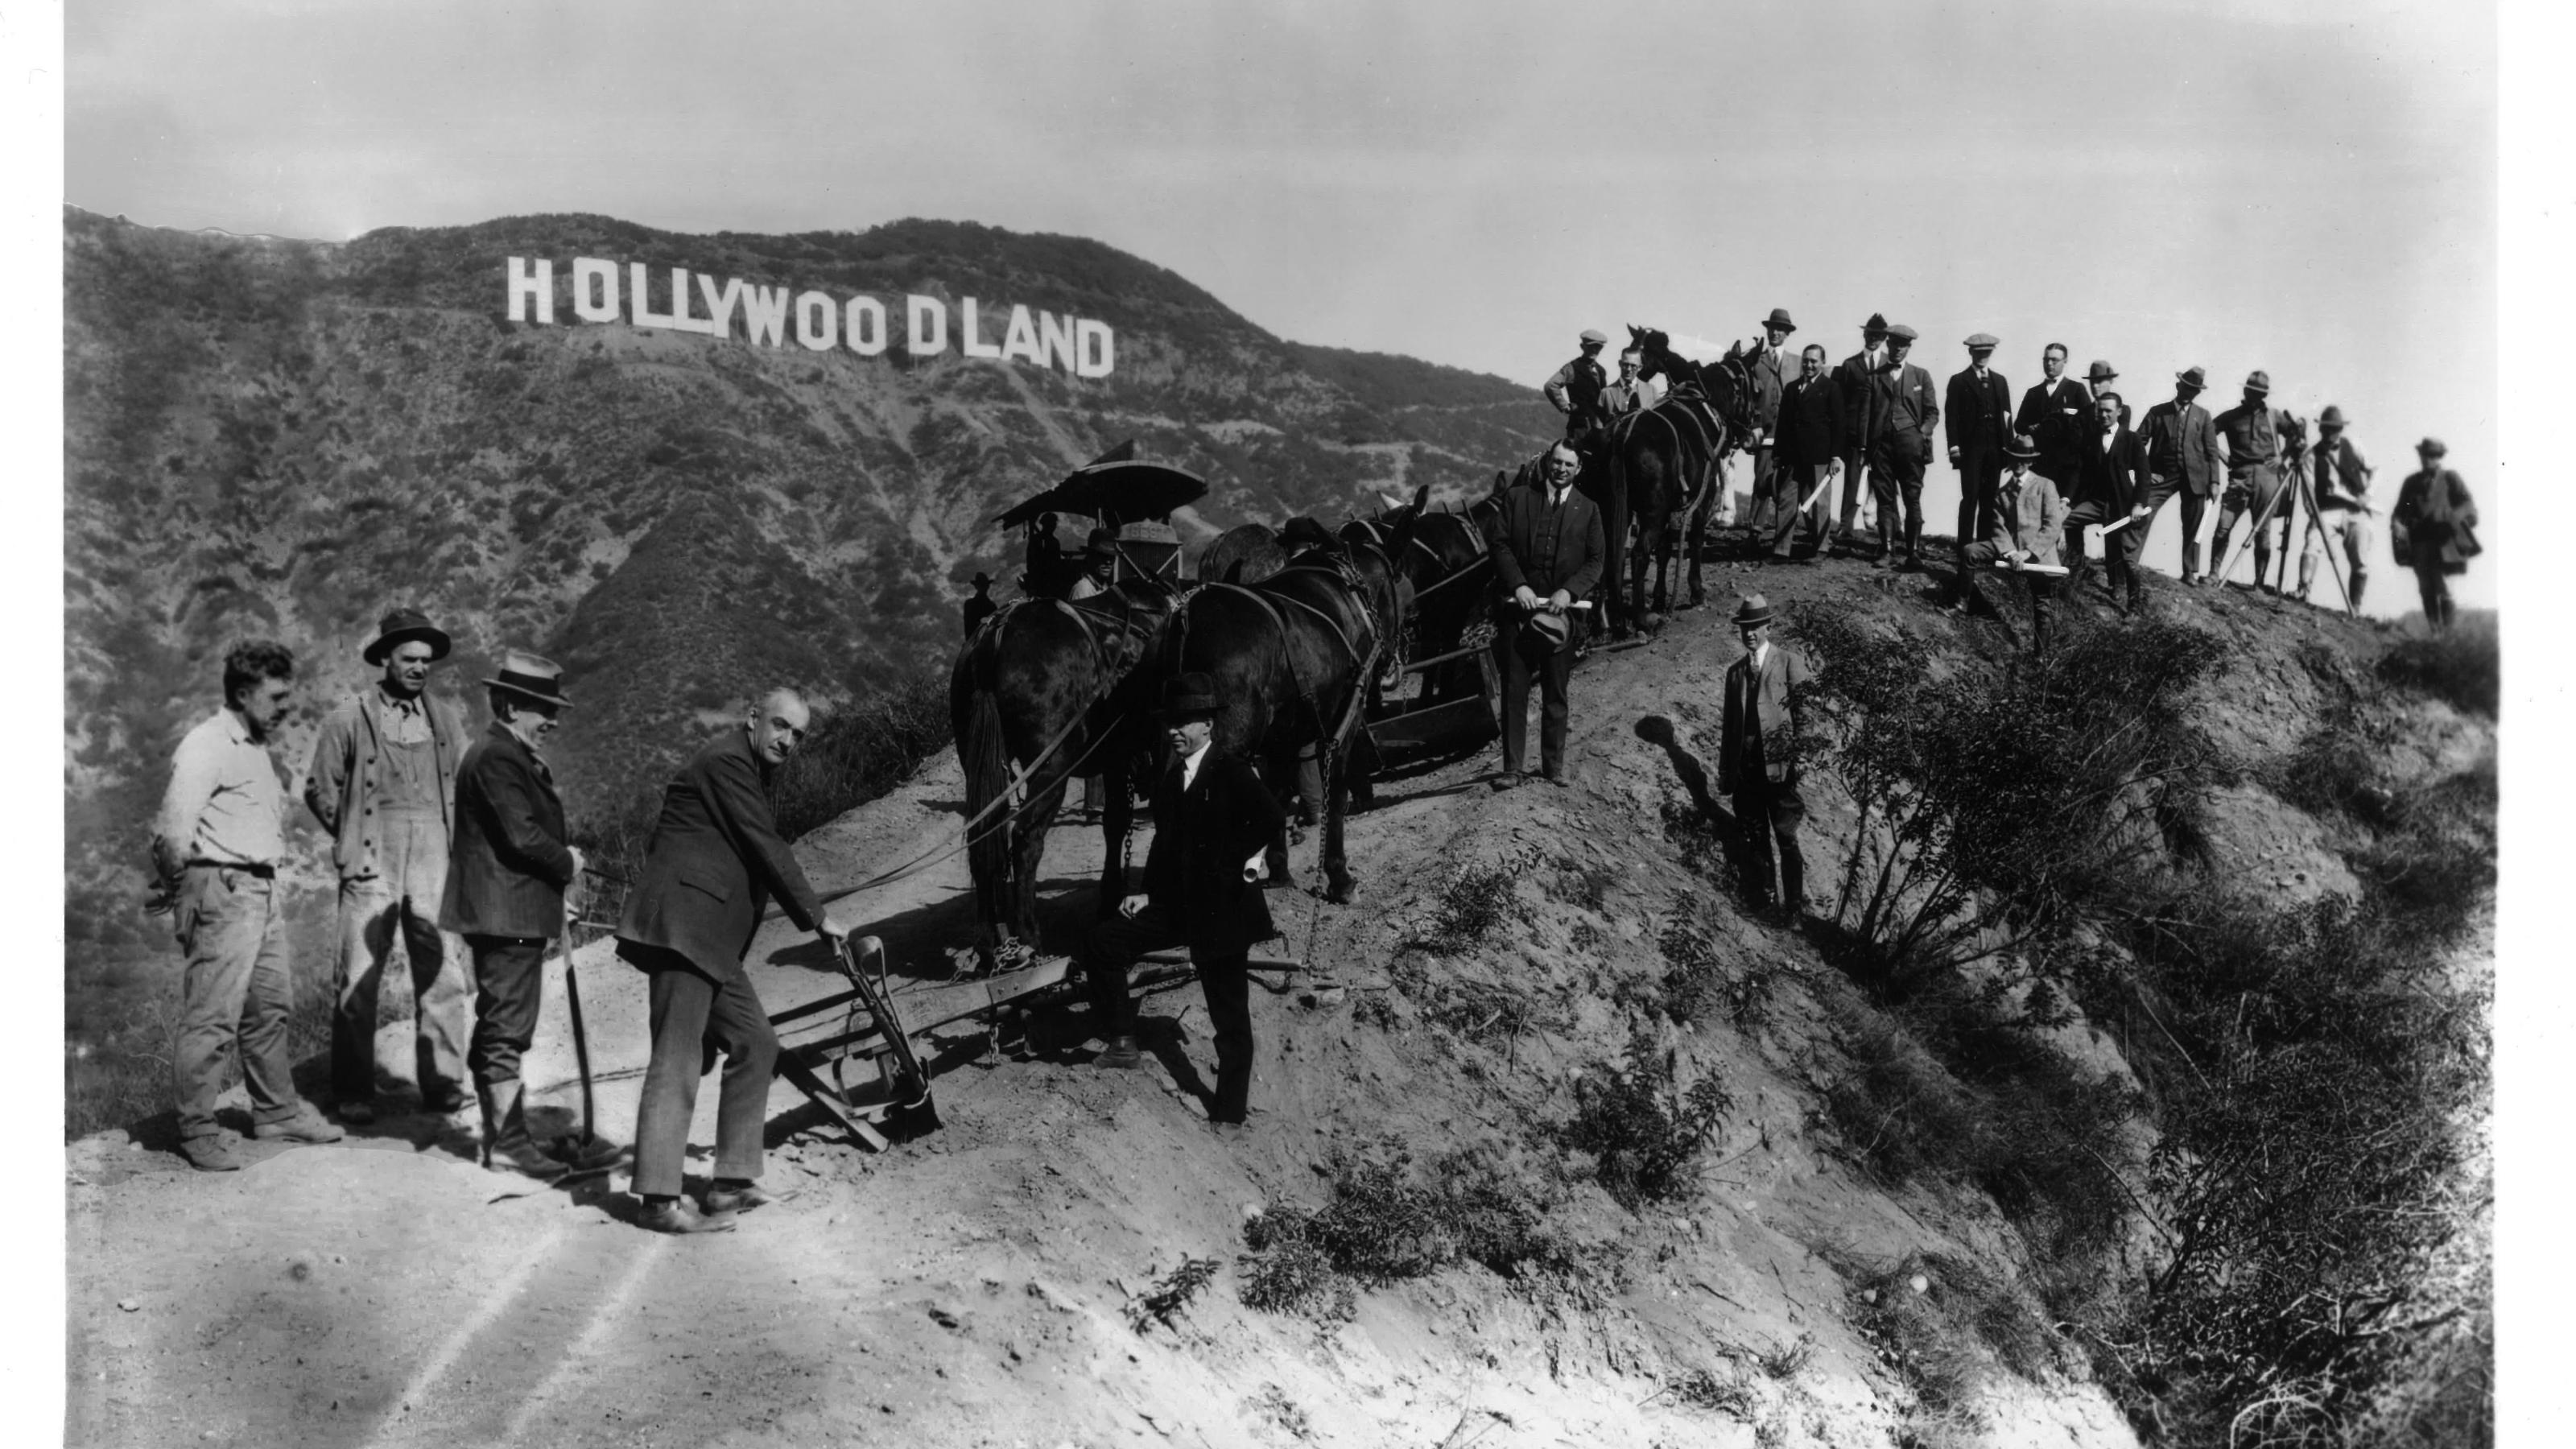 Schwarz-weiß Foto von Männern in den Hügeln vor dem Hollywood Zeichen beim Bau 1923. Damals noch Hollywoodland. Mit Eseln und Dampfmaschinen auf einem unbefestigten Weg.